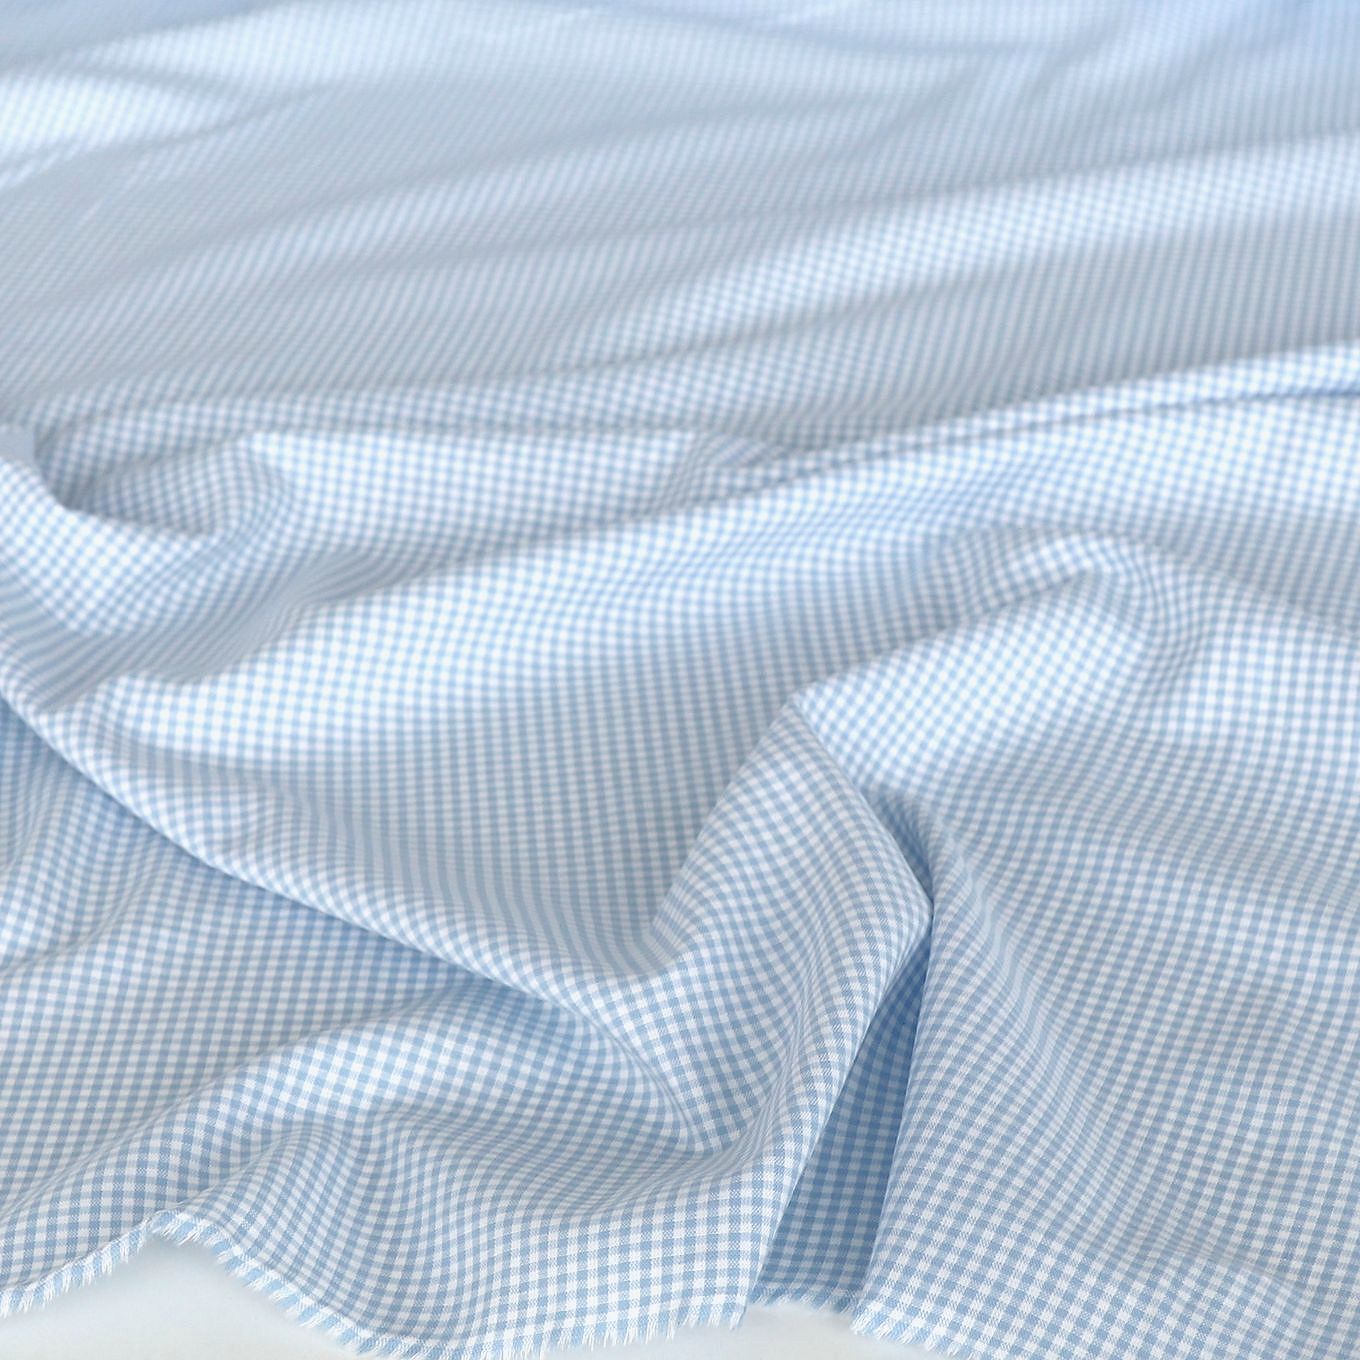 Weiche Karo Baumwollstoff Meterware für Kleid Gardine Vorhang - hellblau weiß